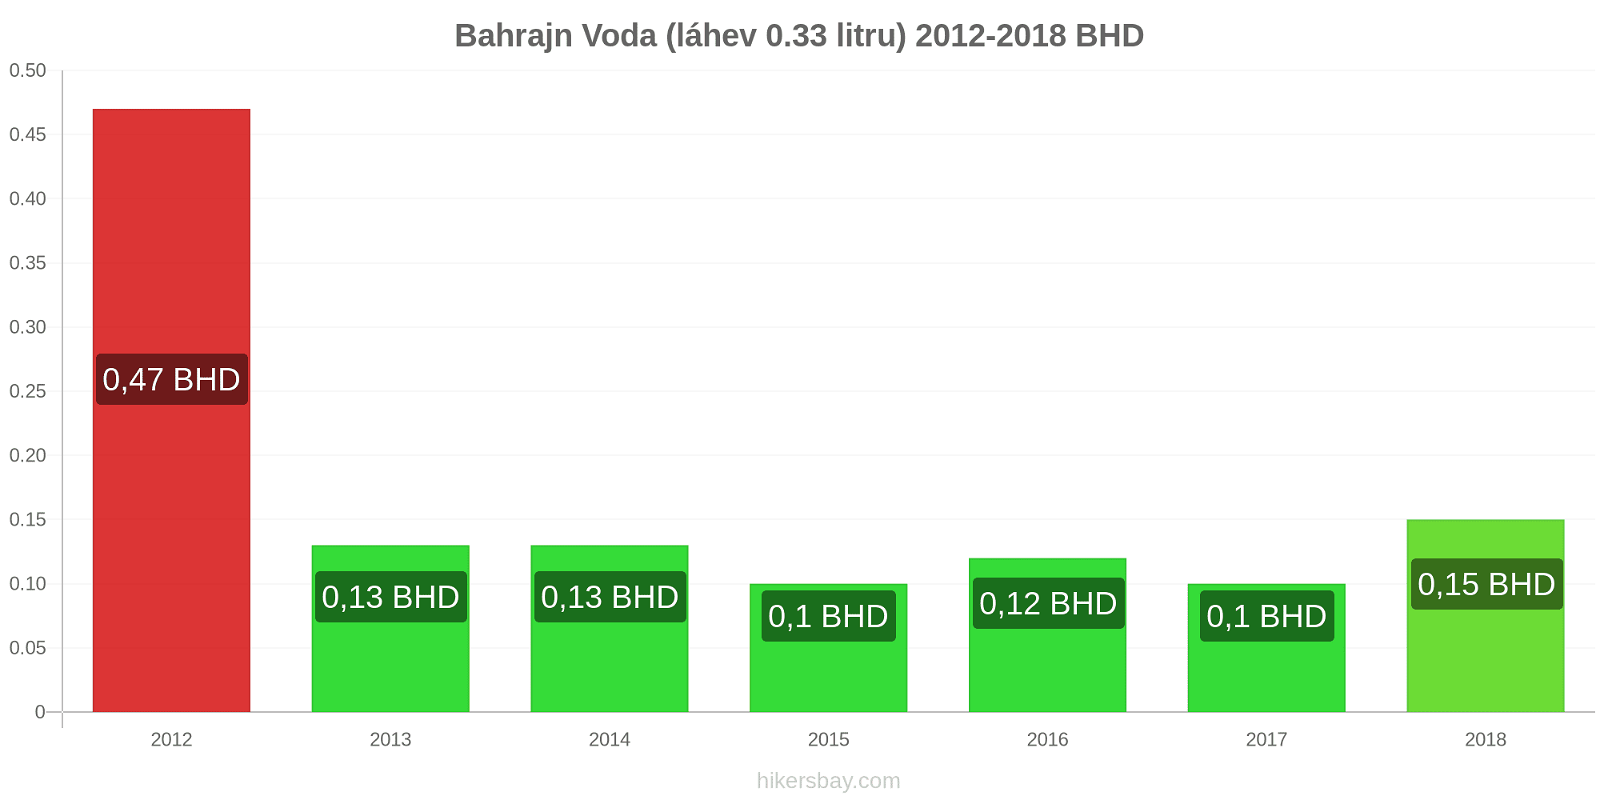 Bahrajn změny cen Voda (láhev 0.33 litru) hikersbay.com